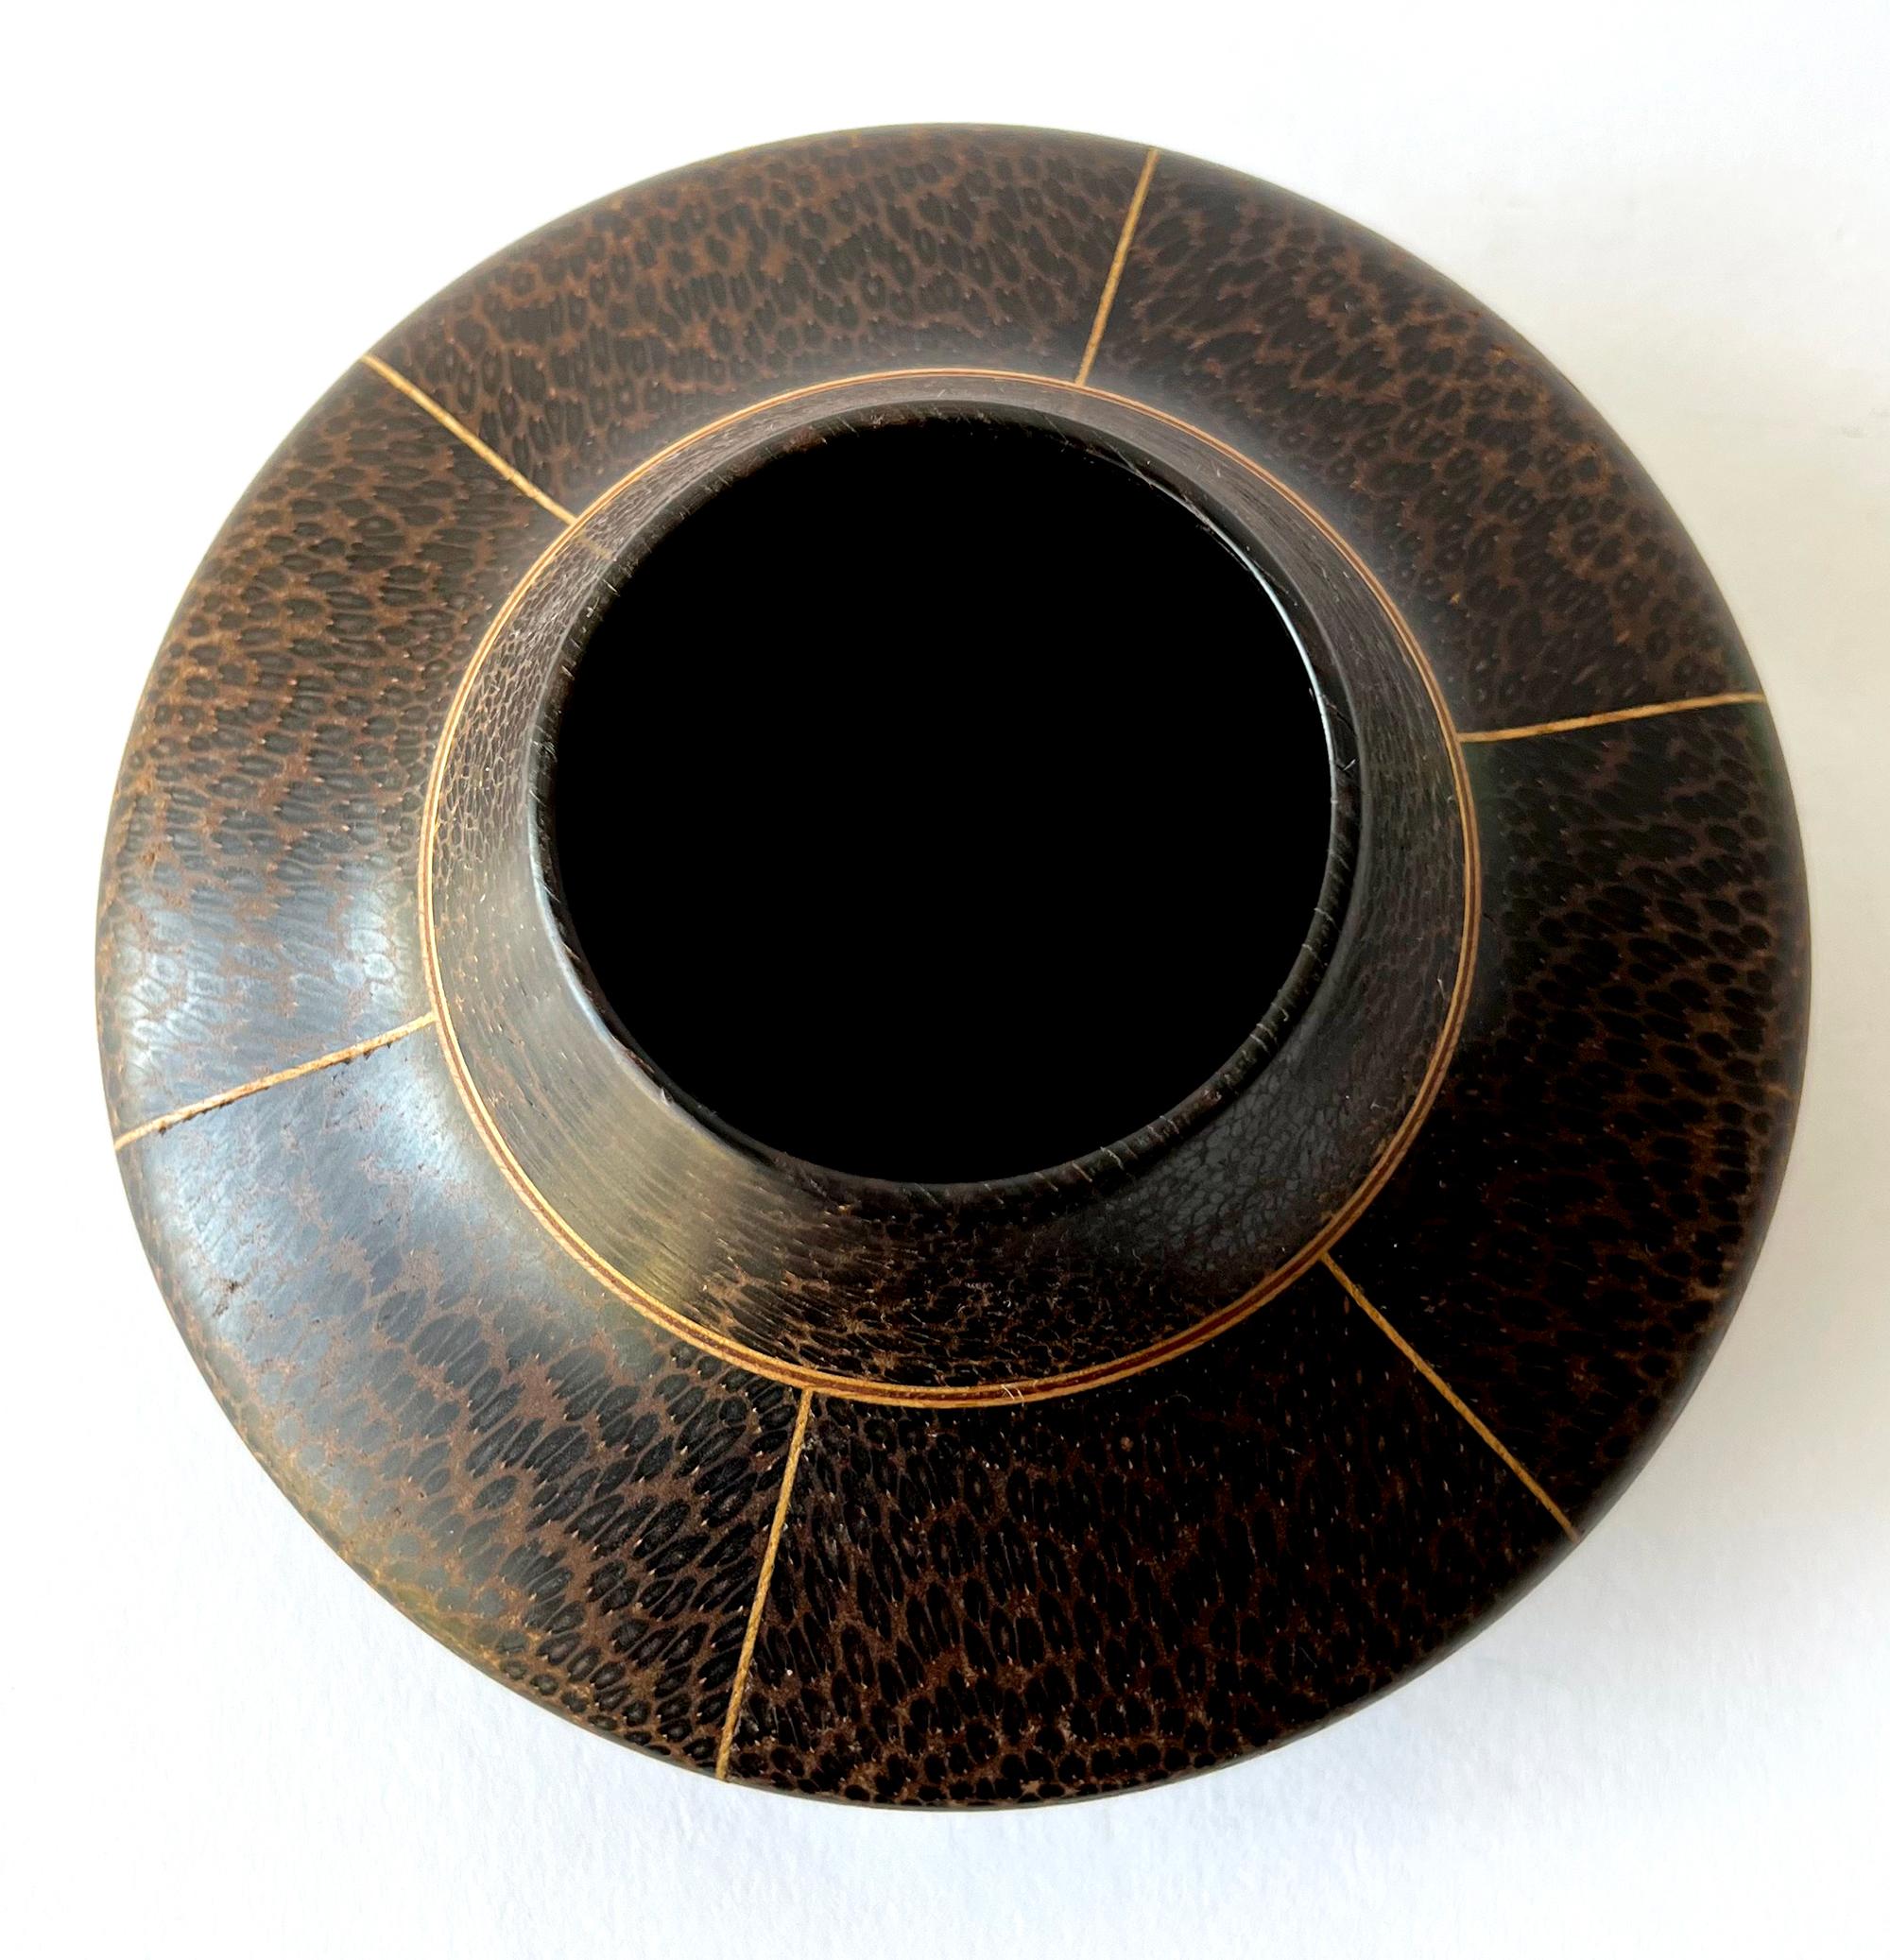 Handgedrehte Vase aus schwarzer Palme und Ahorn von Galen Carpenter, ca. 1980er Jahre.  Vase misst 3,75 